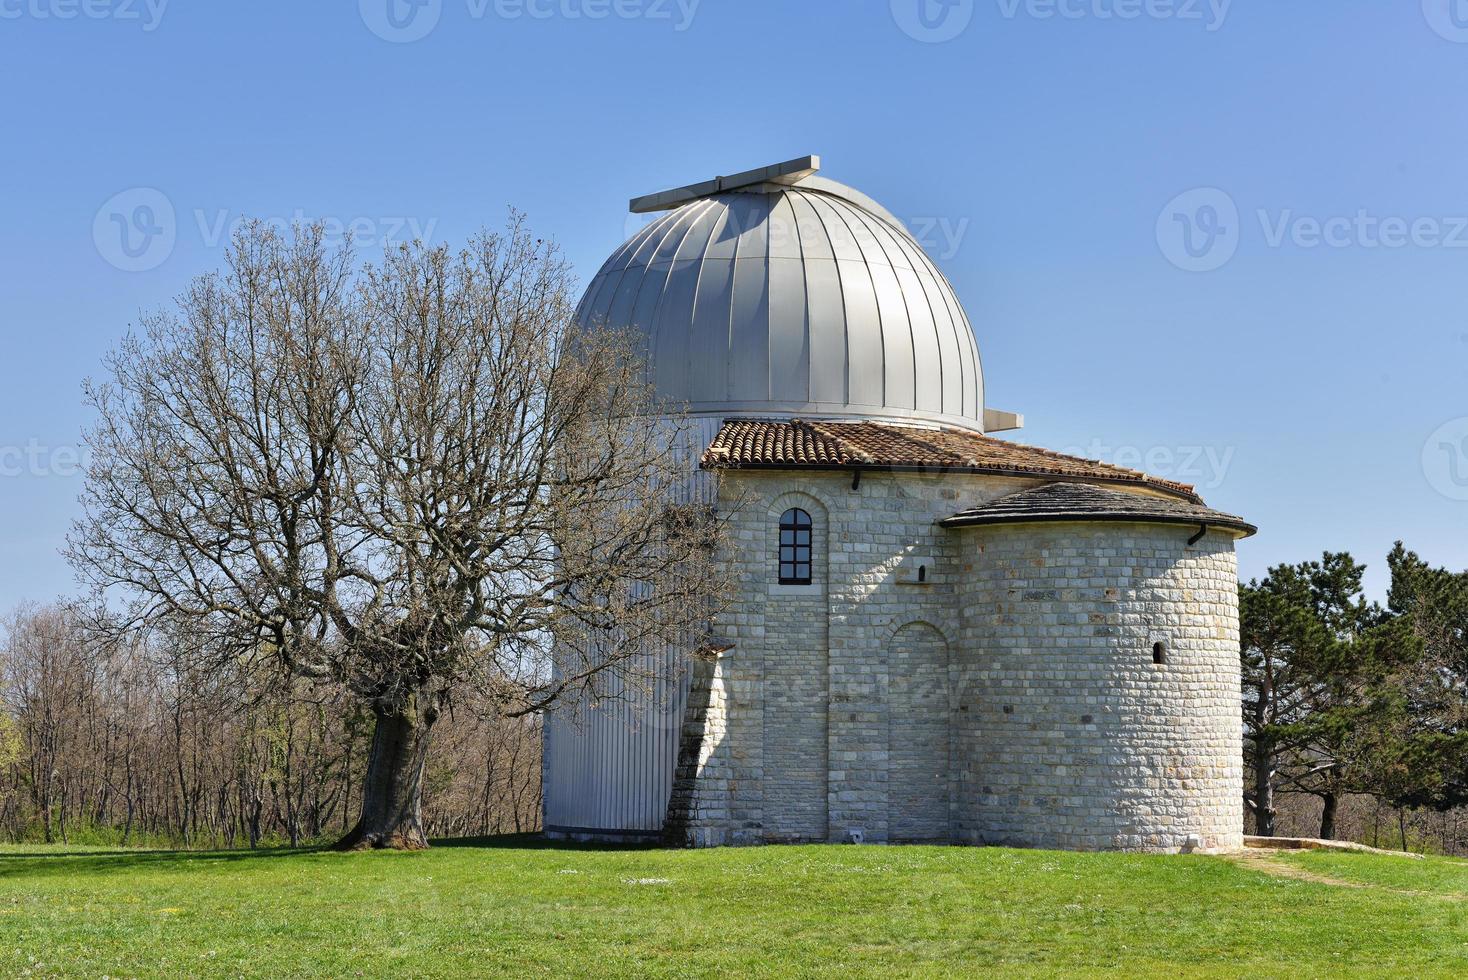 astronomiobservatorium i tican, Kroatien foto